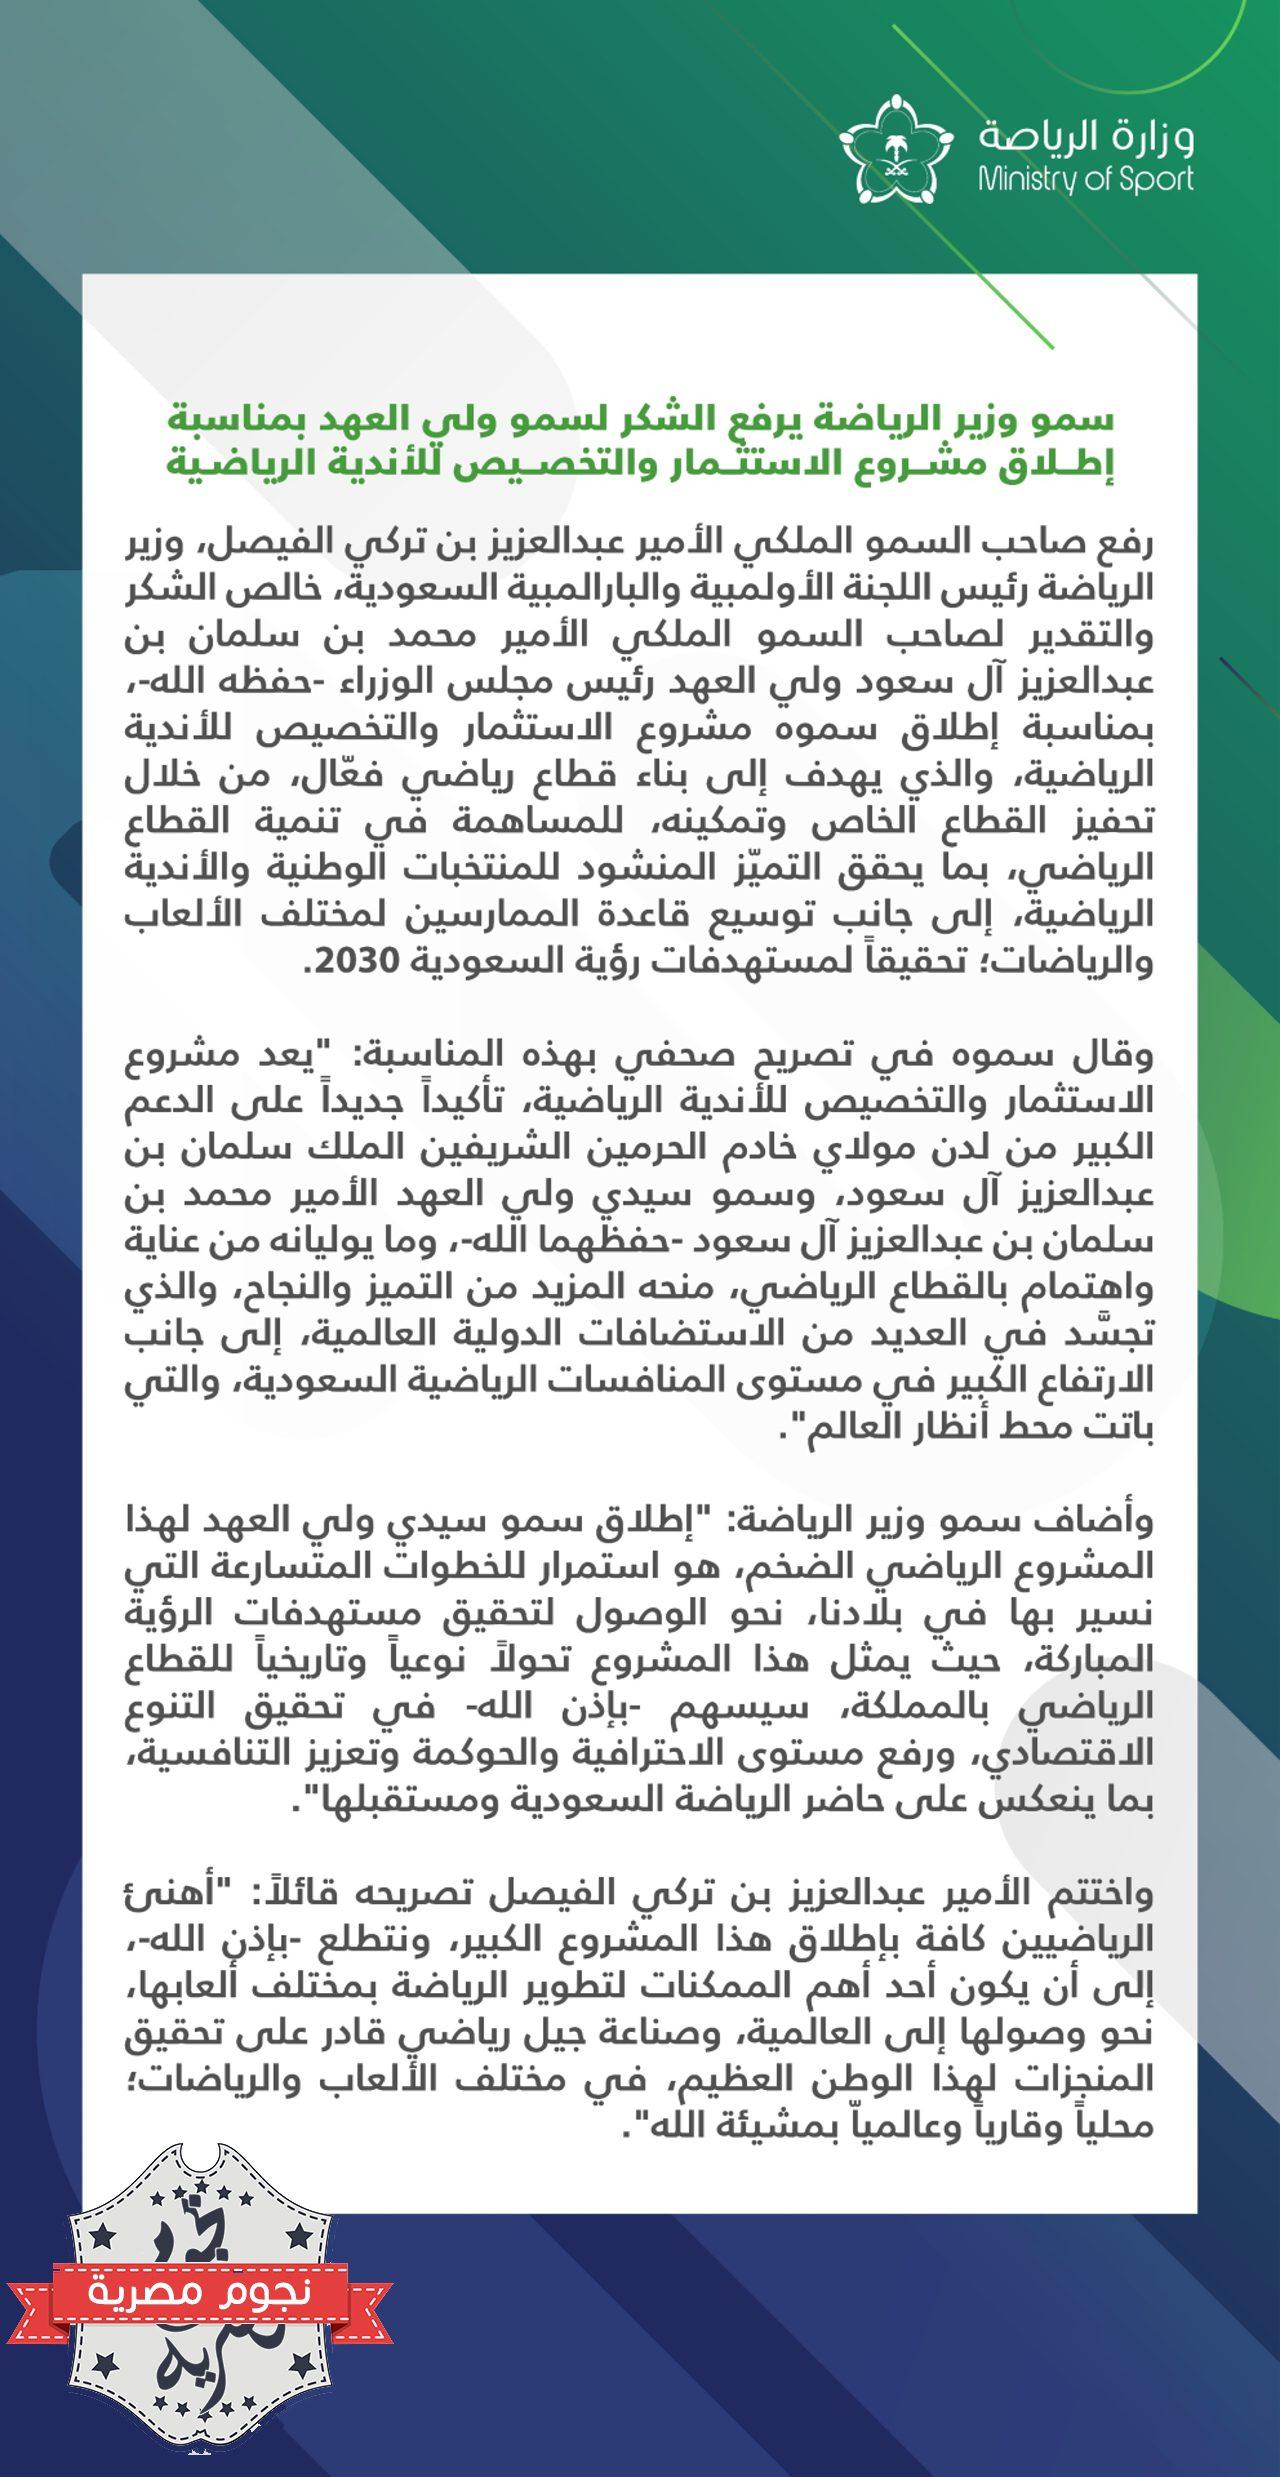 تعليق وزير الرياضة السعودية على المشروع الاستثماري الجديد المعلن من جانب ولي العهد